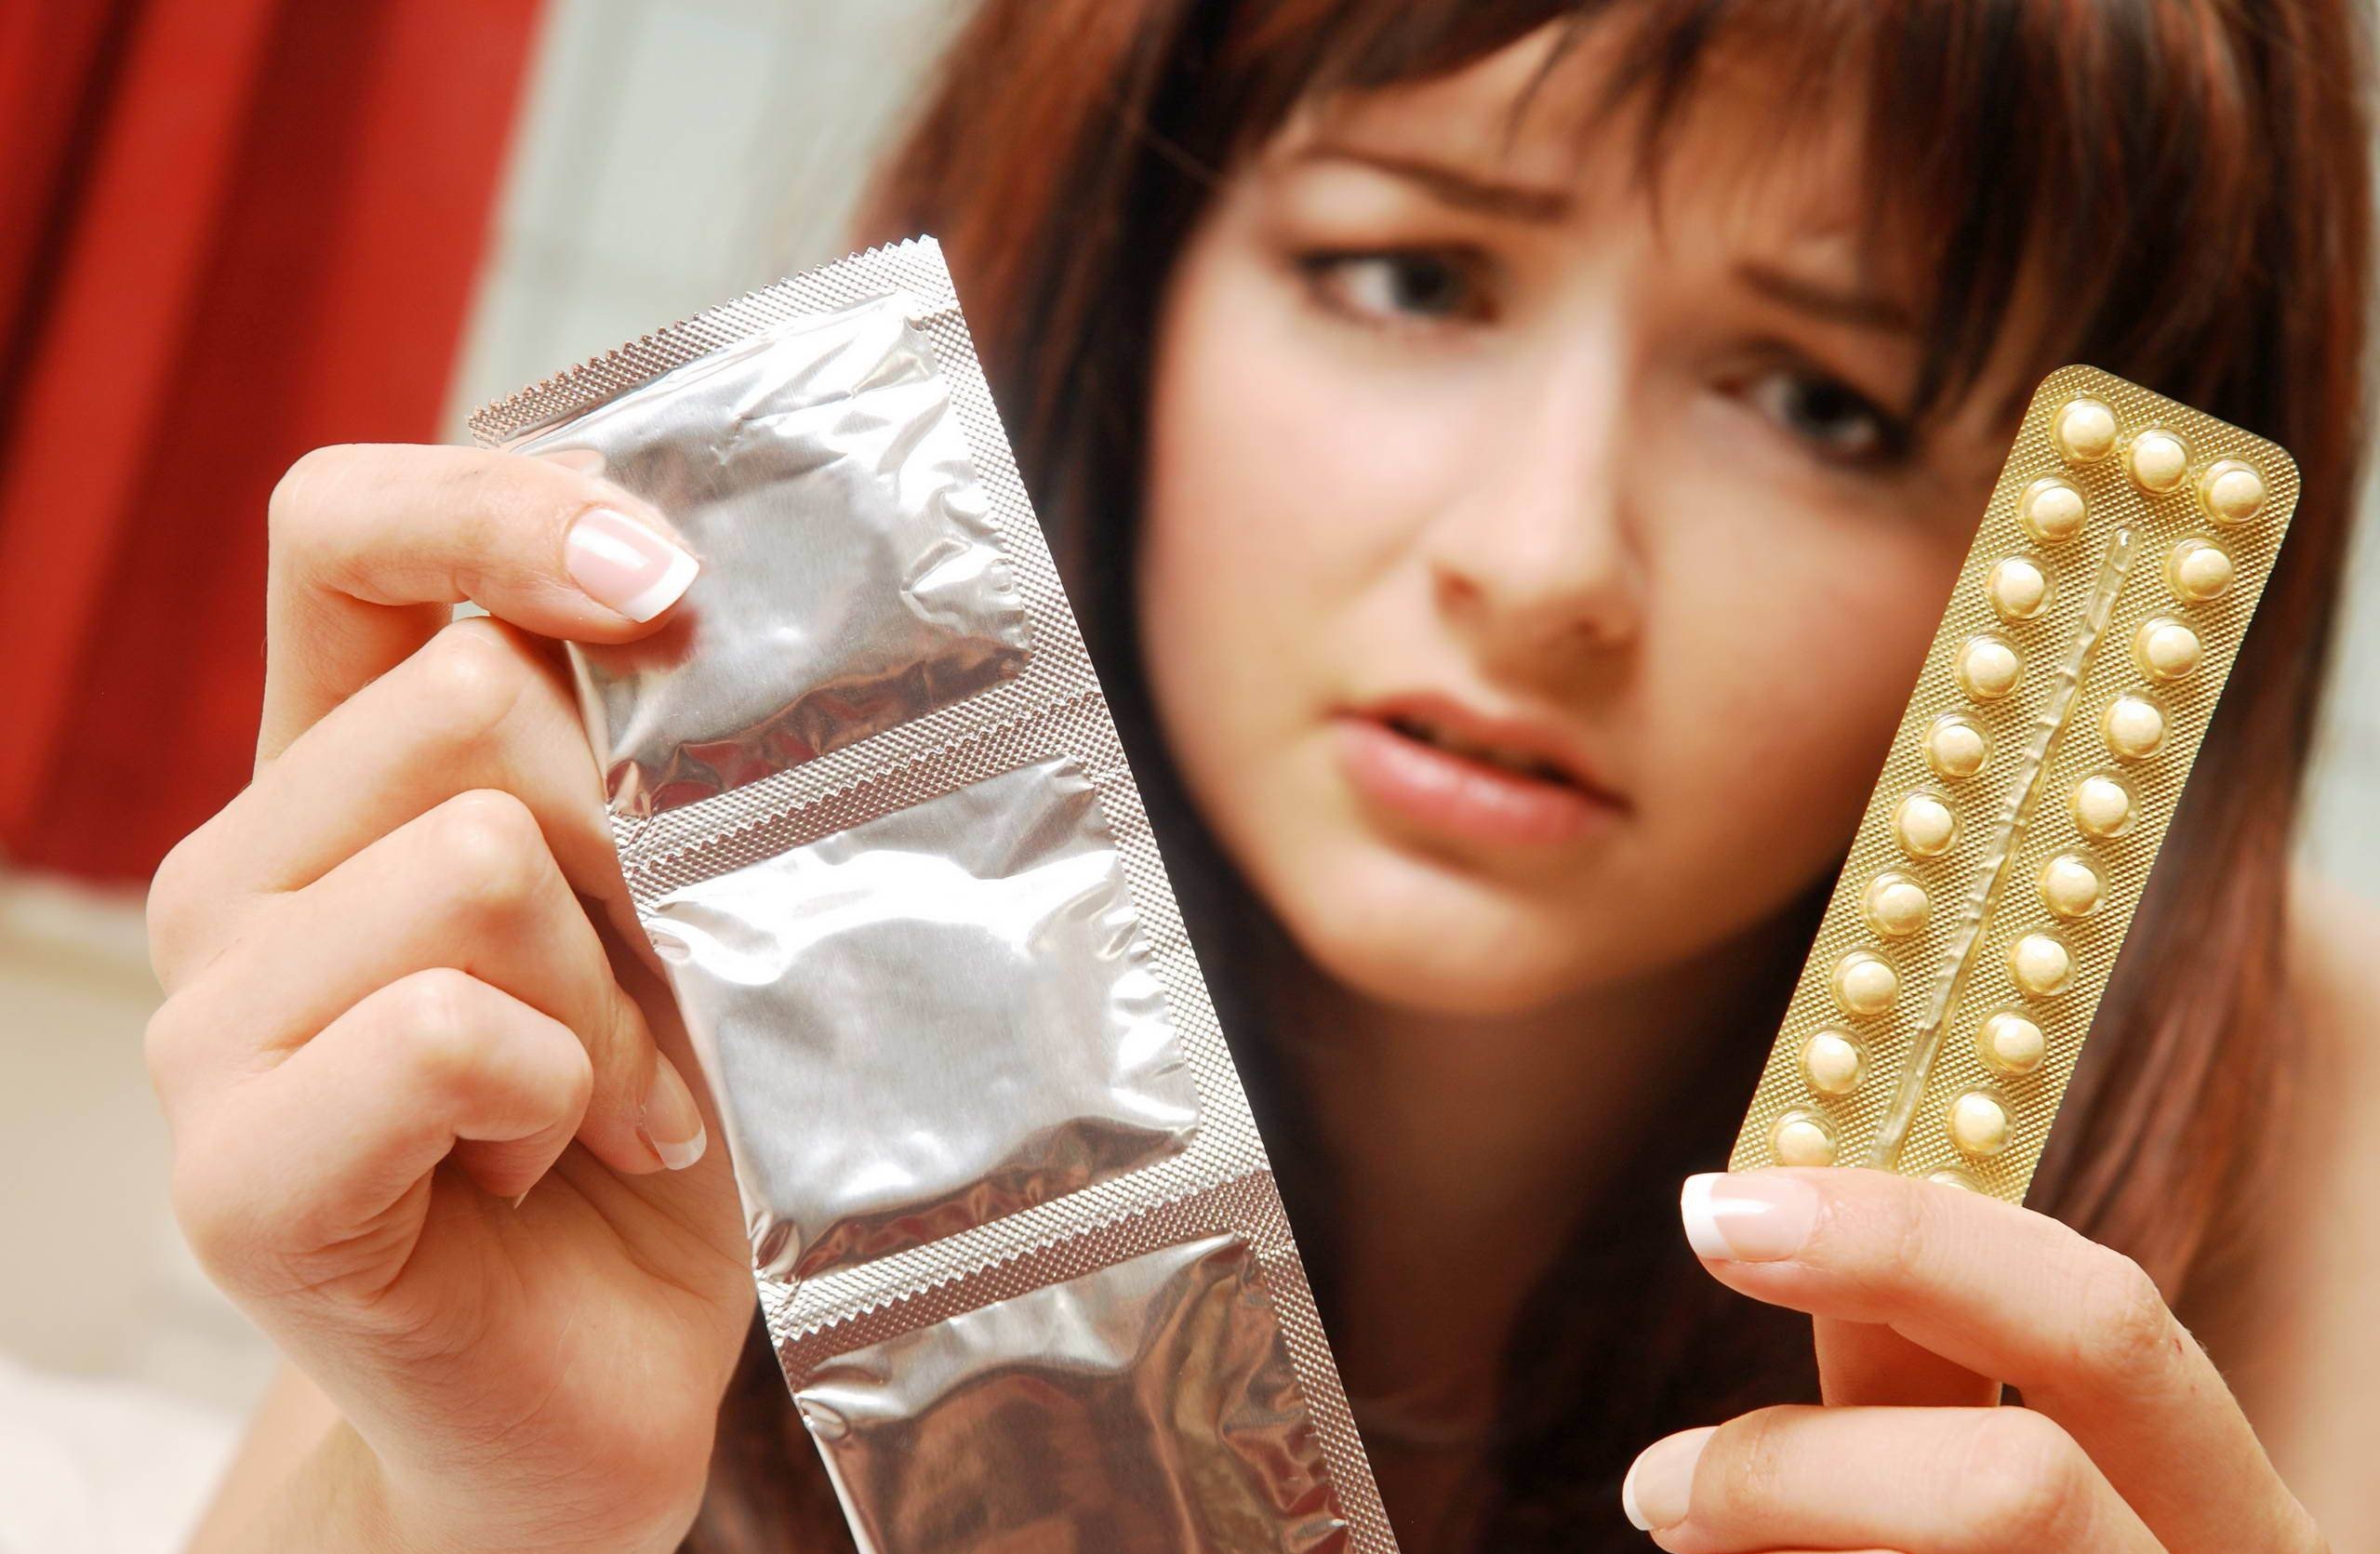 При миоме нужно правильно выбирать методы контрацепции